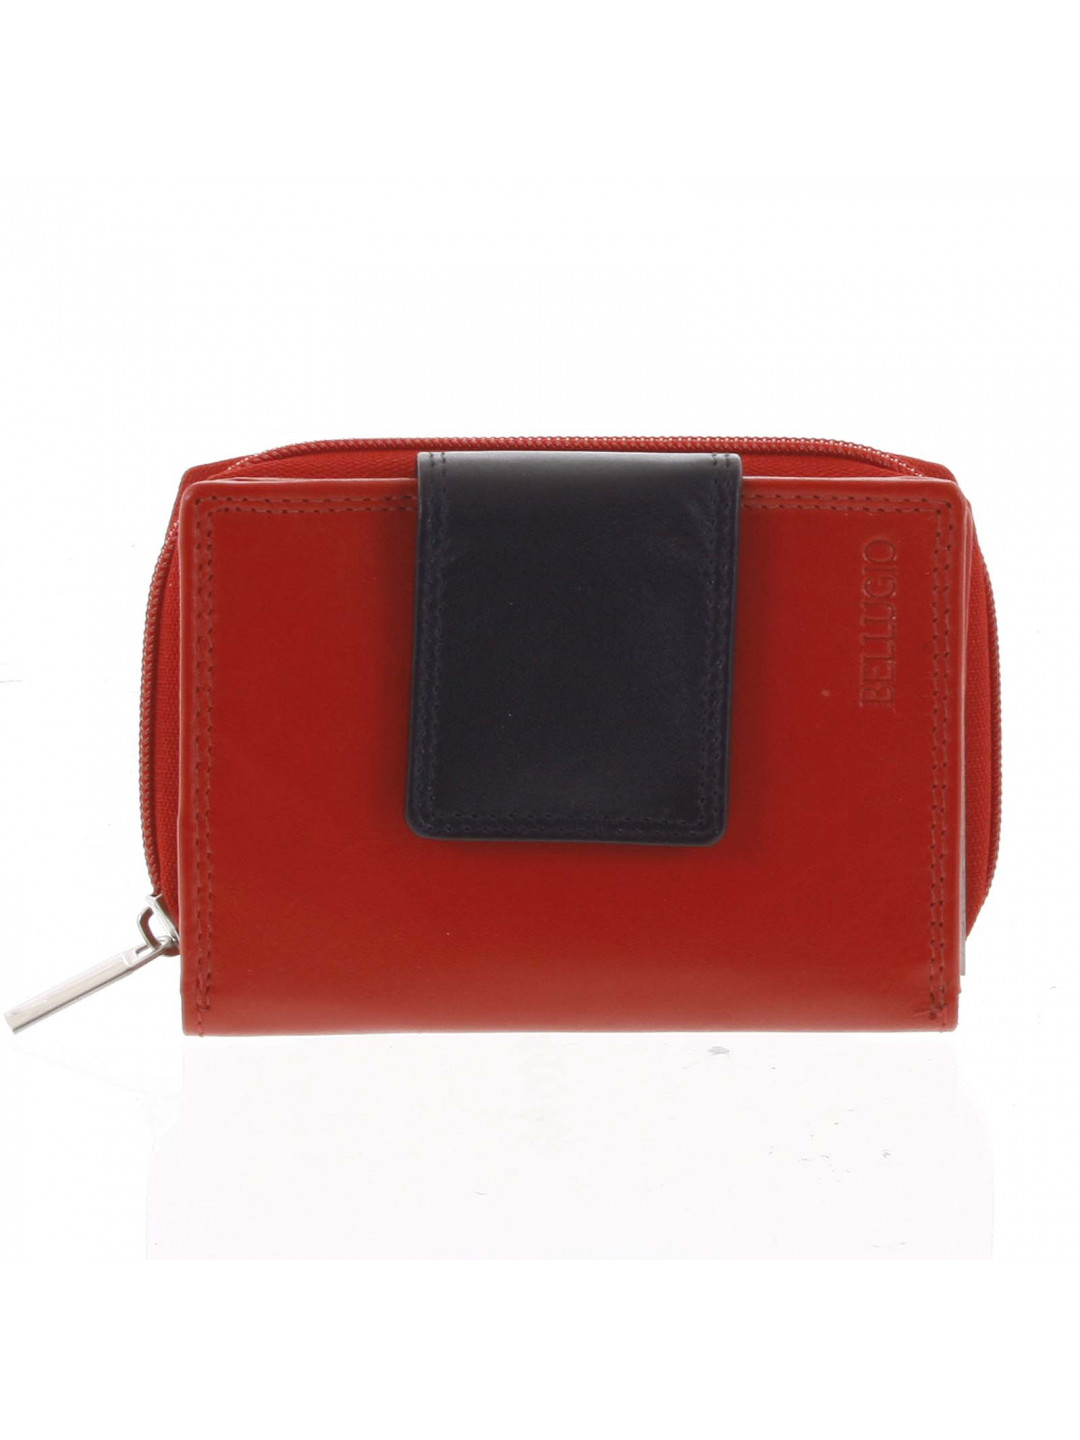 Dámská kožená peněženka Alice červená černá